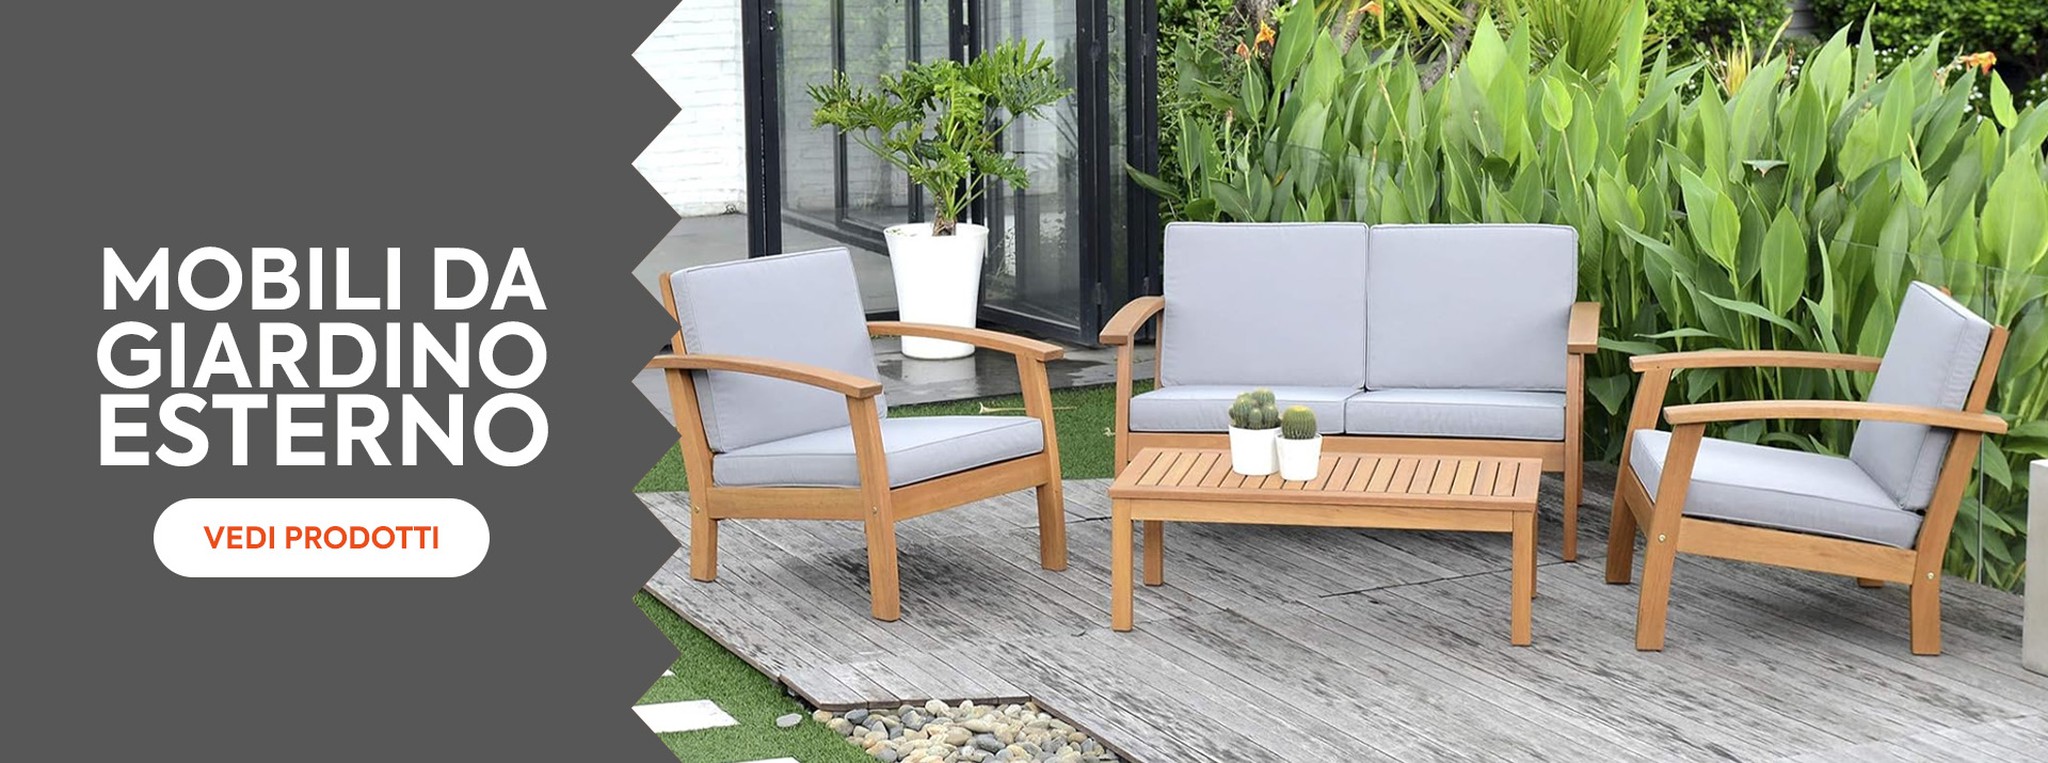 Scopri la nostra collezione di mobili da giardino per goderti la tua casa quest'estate